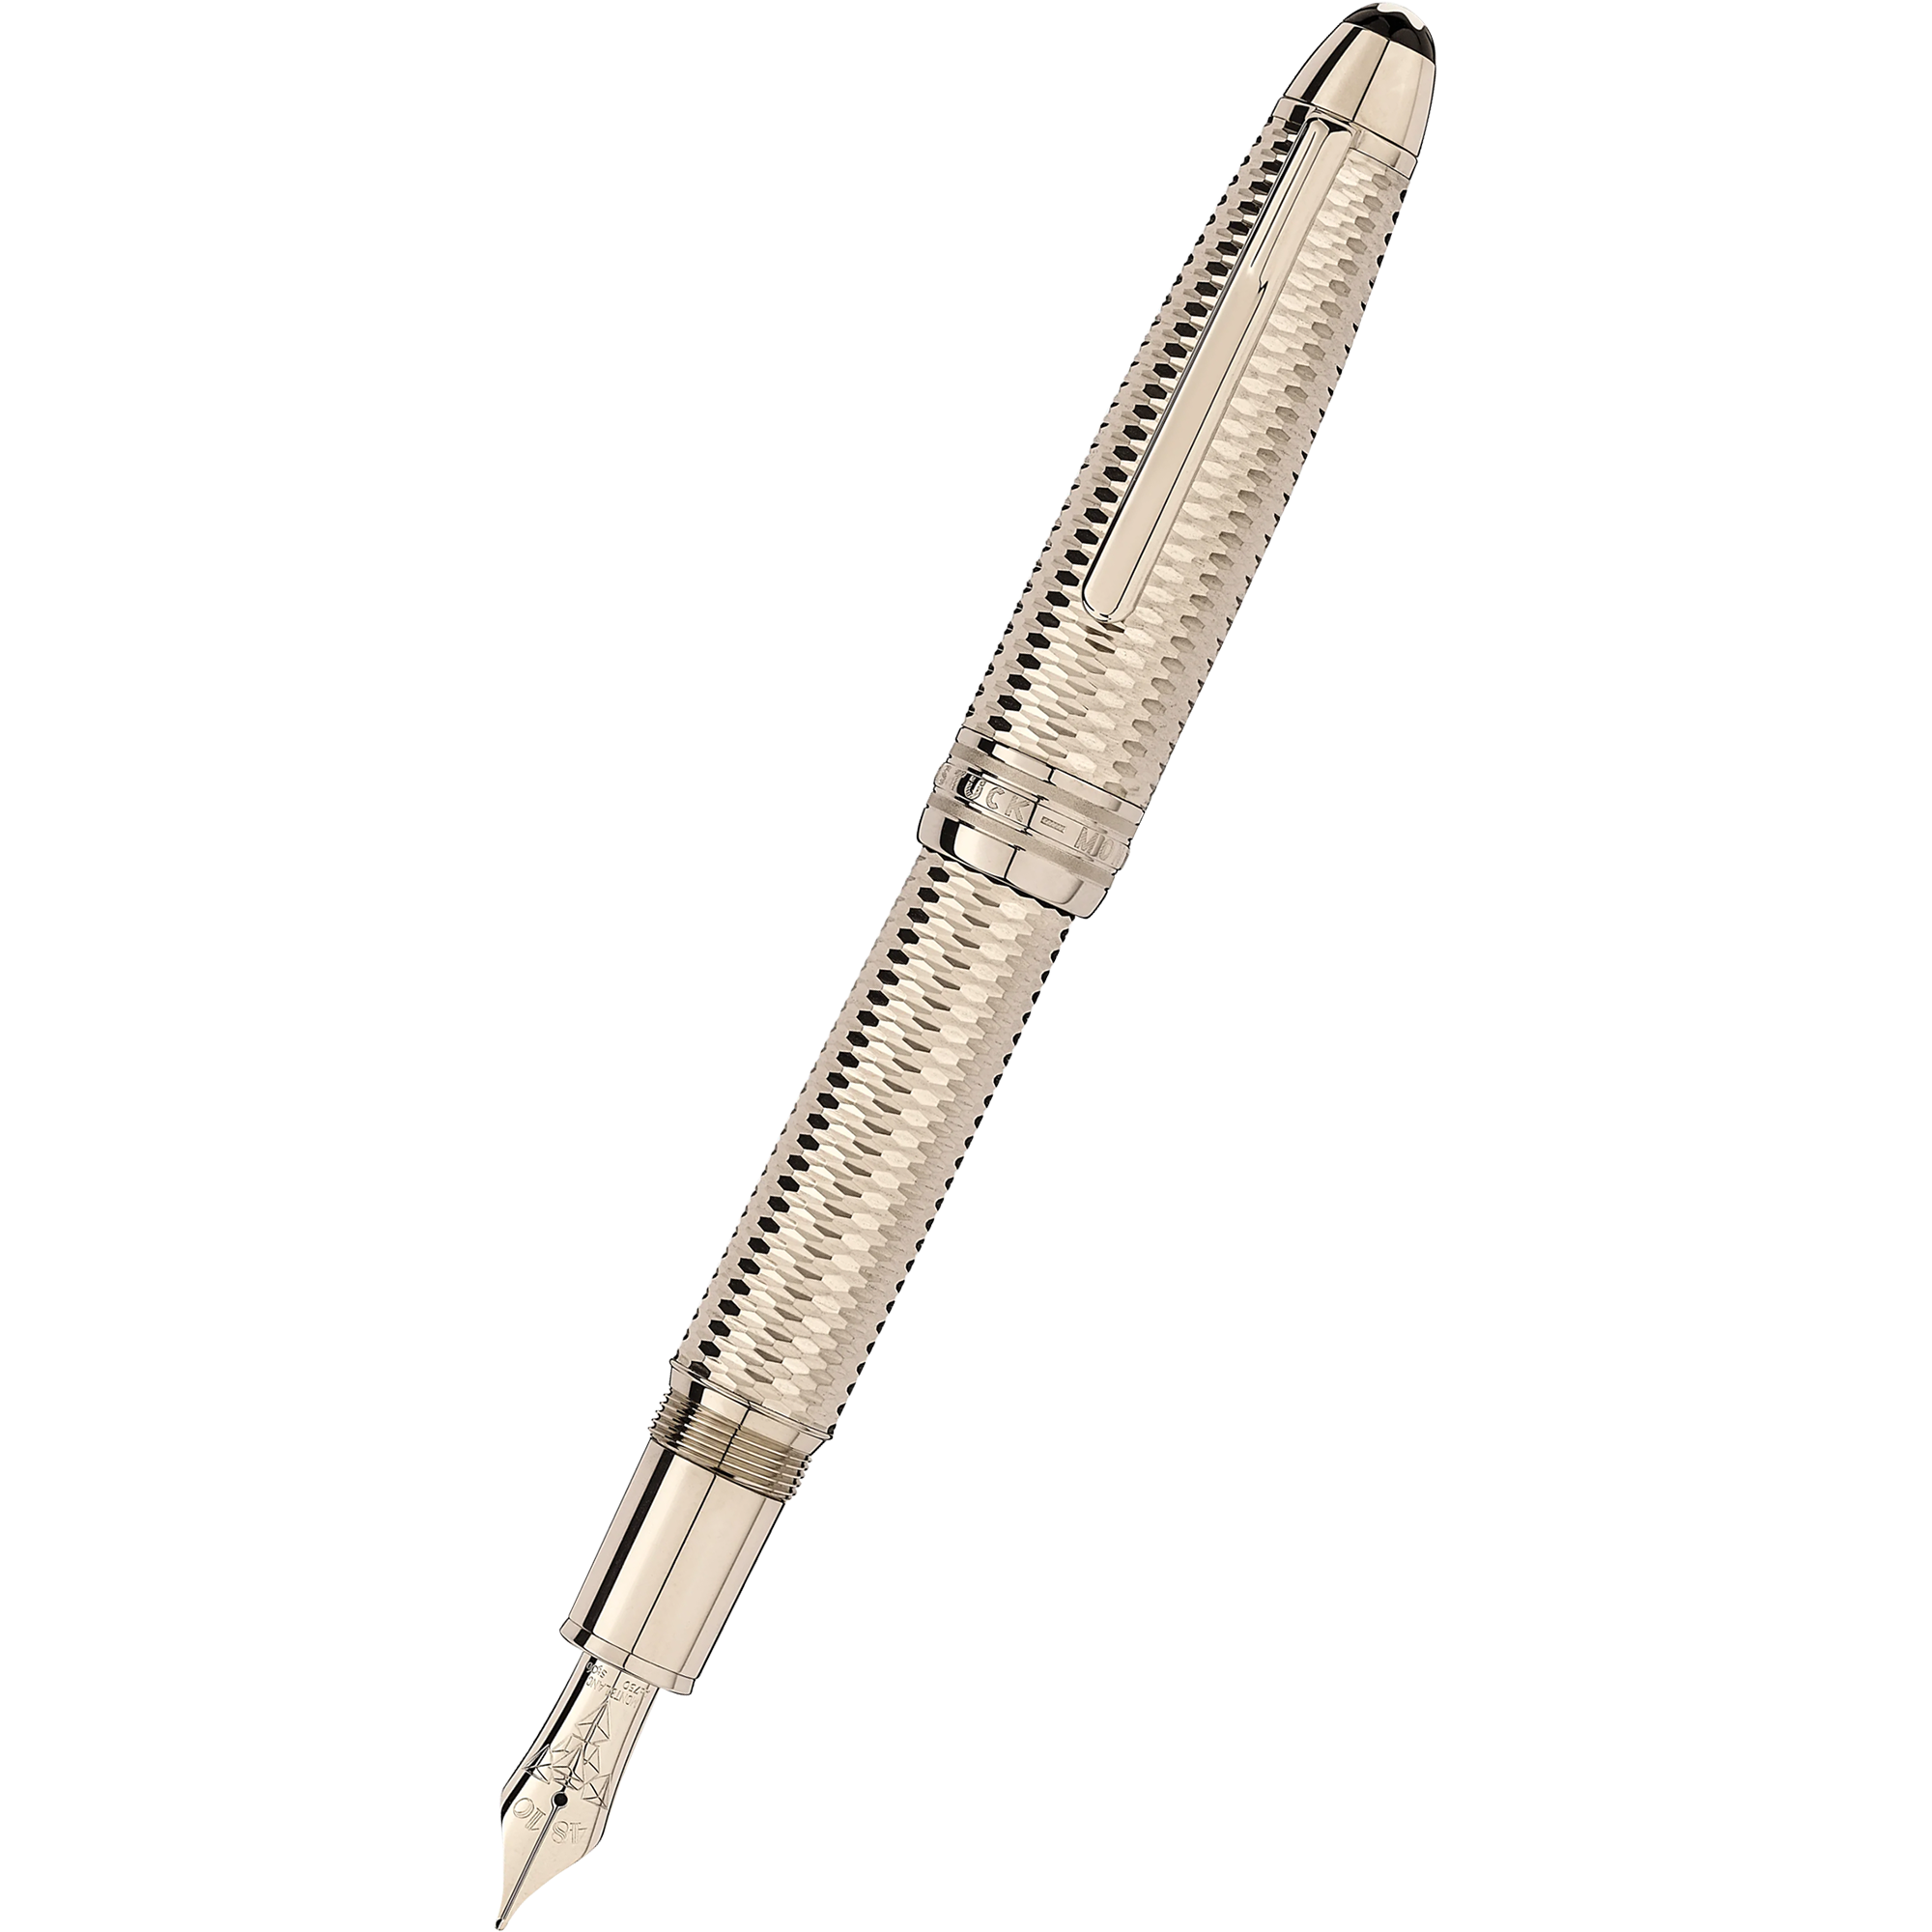 Montblanc Meisterstück Ballpoint Pen - Solitaire White - Platinum Trim - Pen  Boutique Ltd